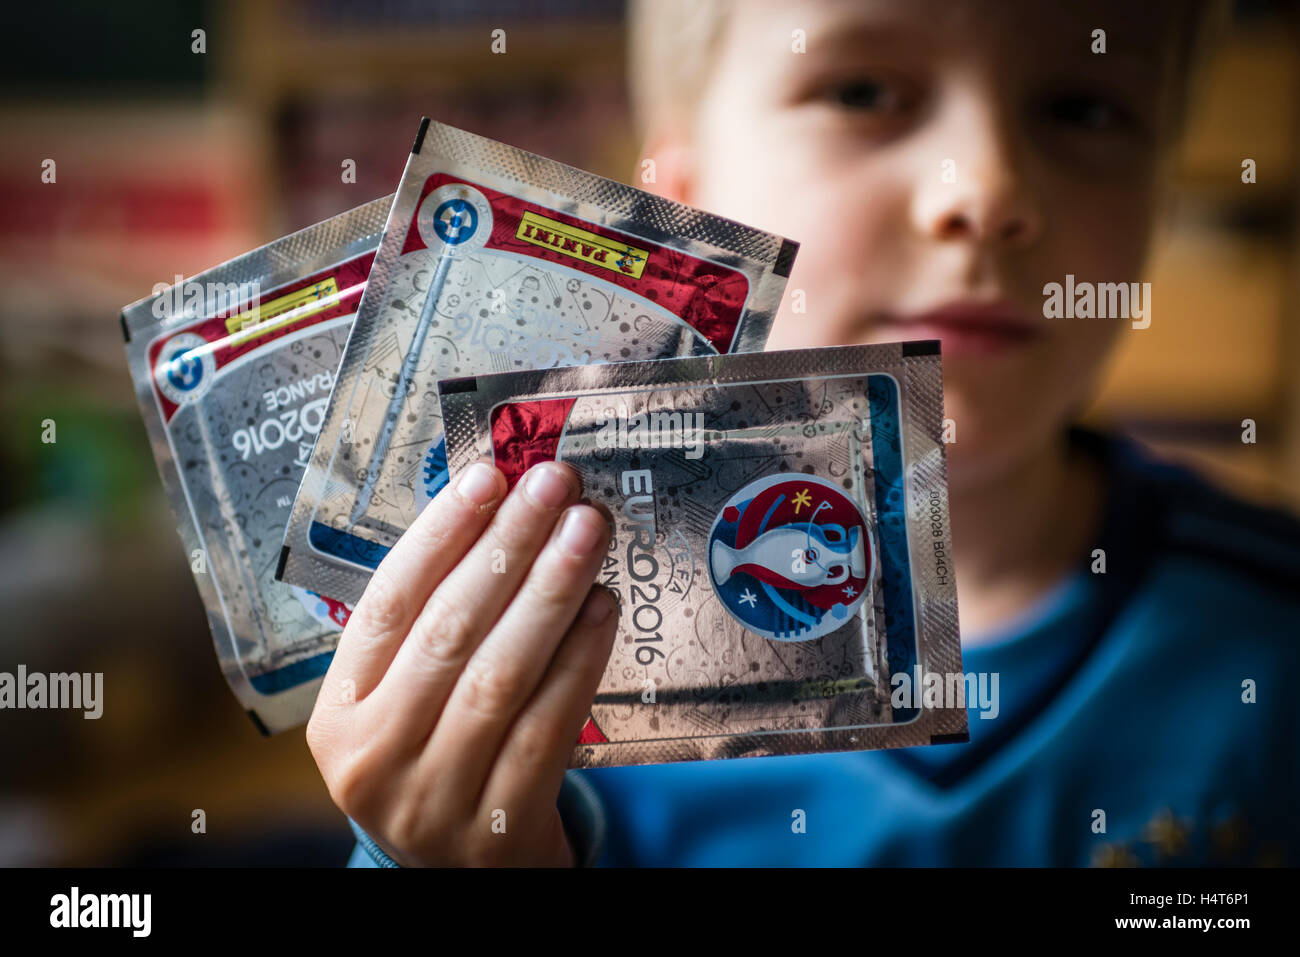 Un garçon de 8 ans est montrant son pack de football Panini trading cards pour l'EURO 2016 Le championnat d'Europe de football de l'UEFA. Banque D'Images